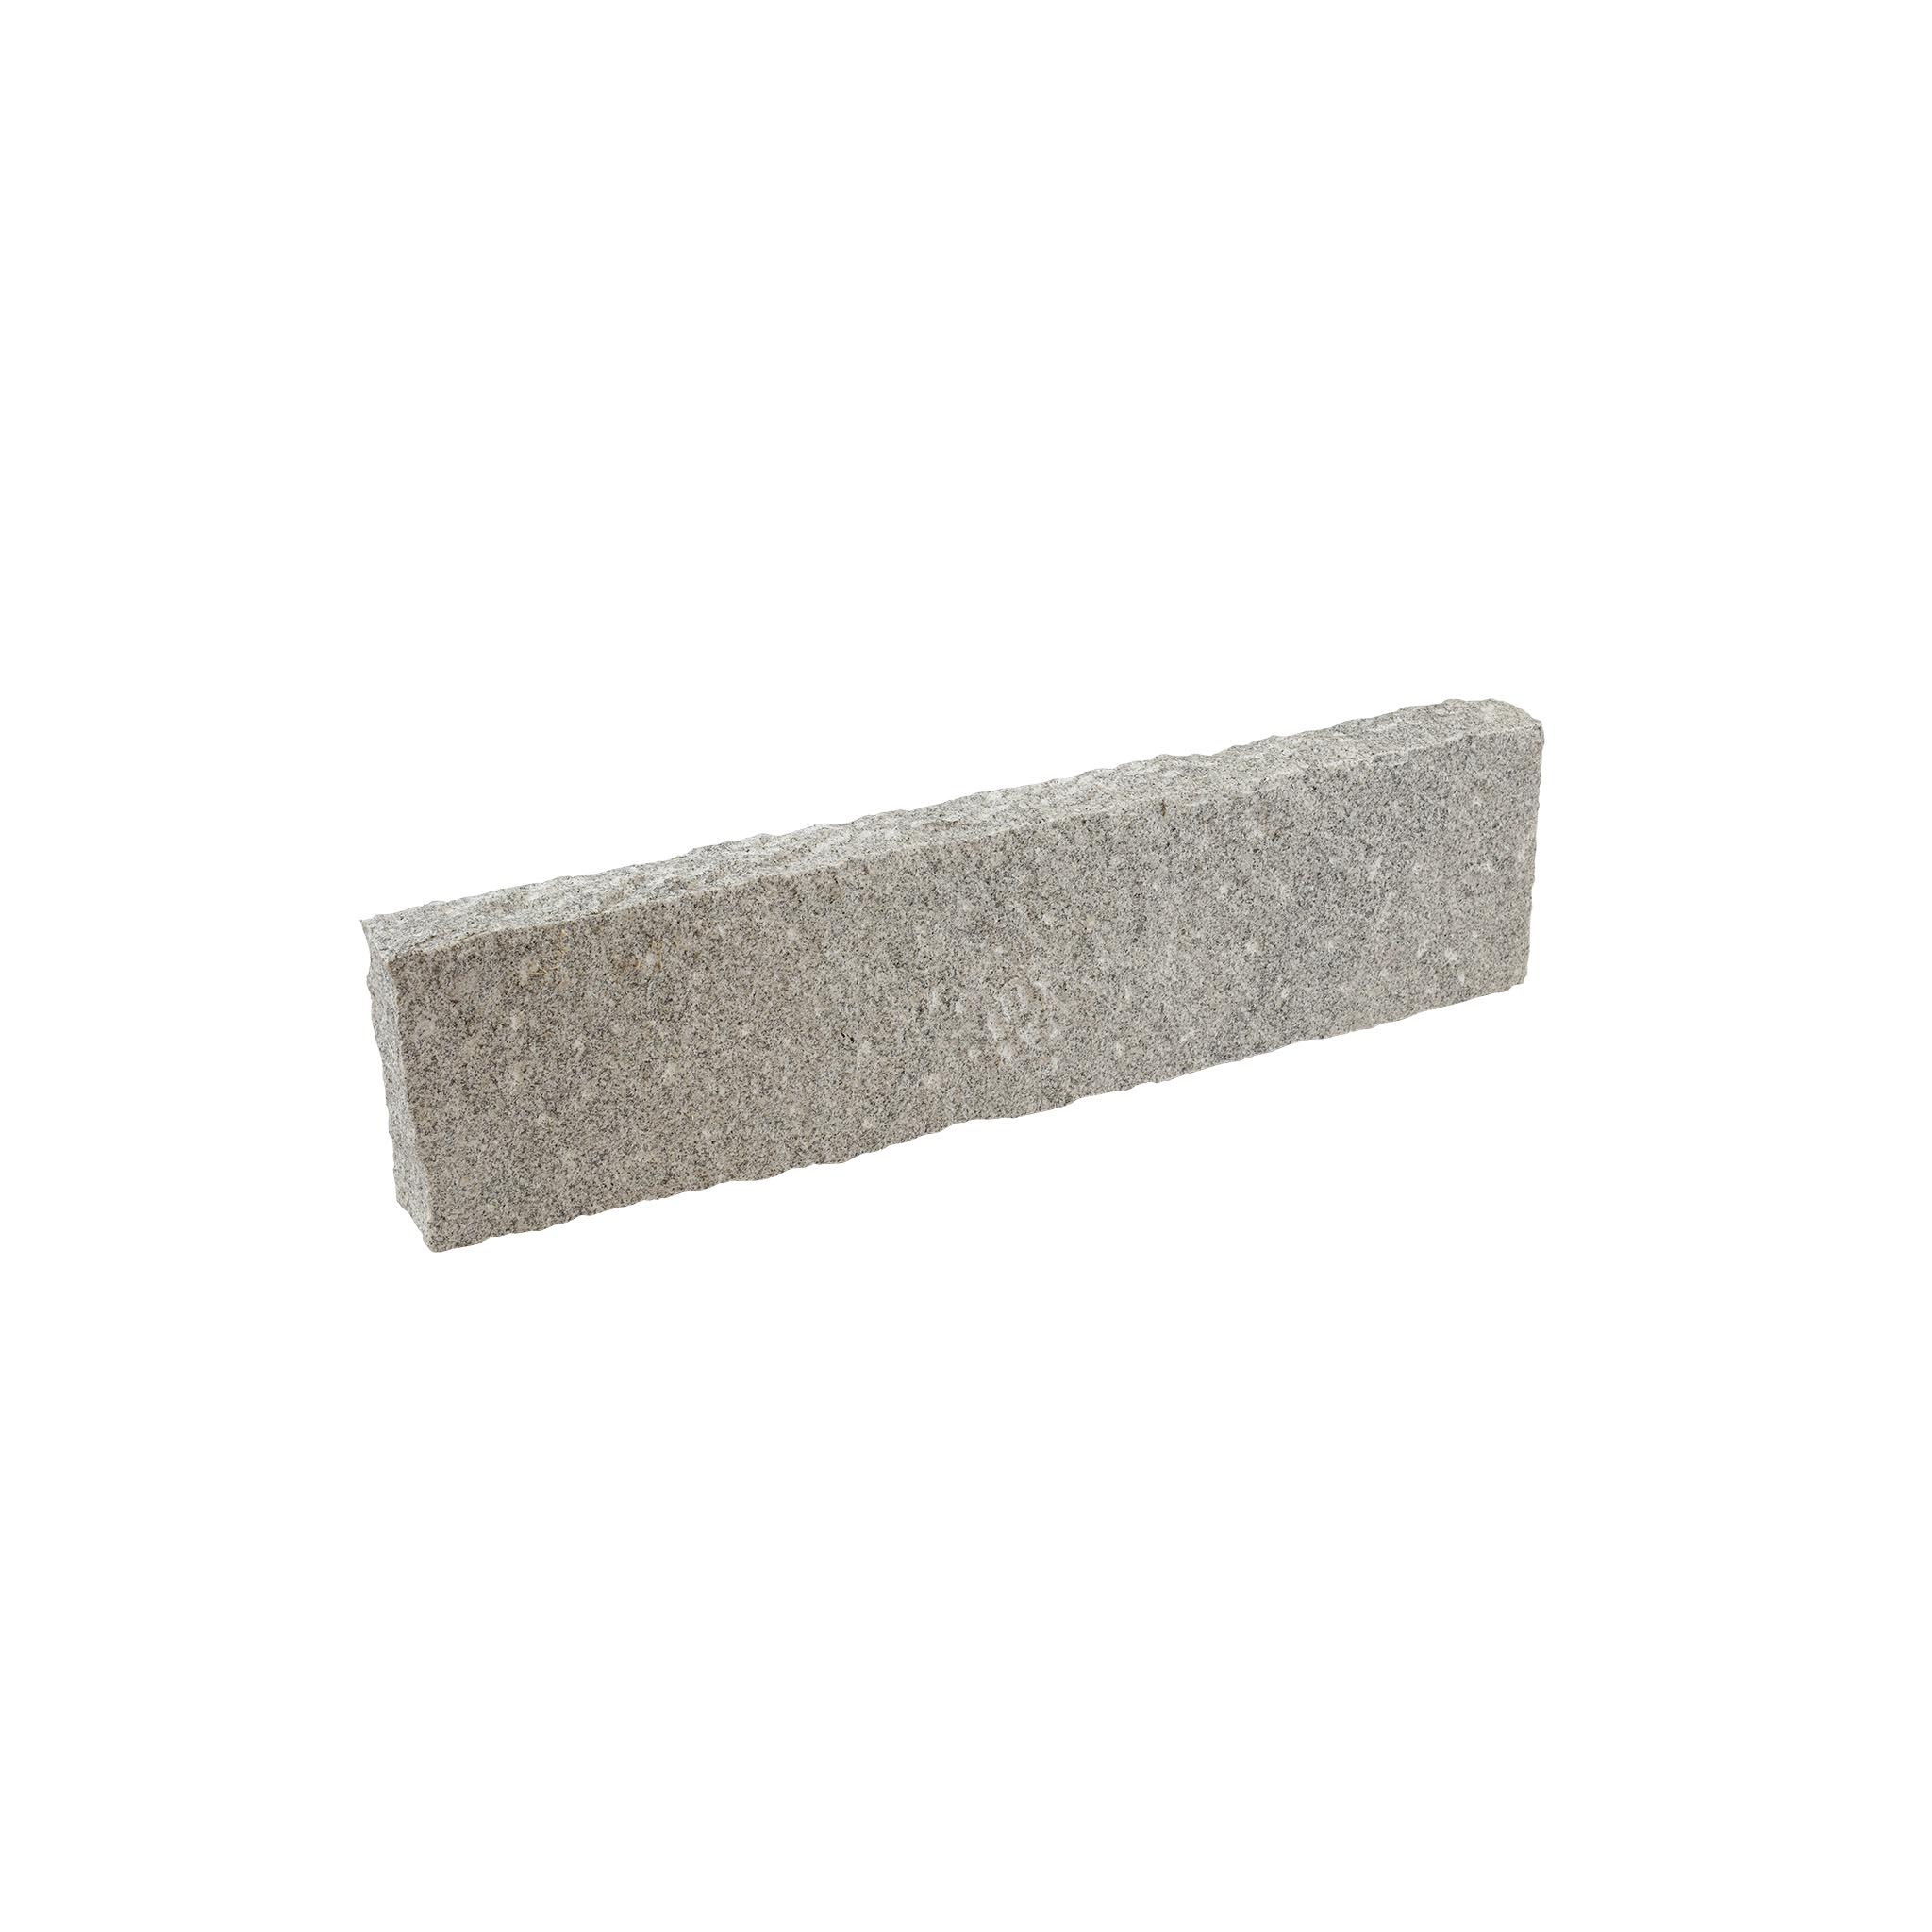 Kantenstein, Granit grau (Rock) gespalten, Granit Rasenkante, 8 x 25–28 x 90–110 cm, grau, G603, gespalten, 